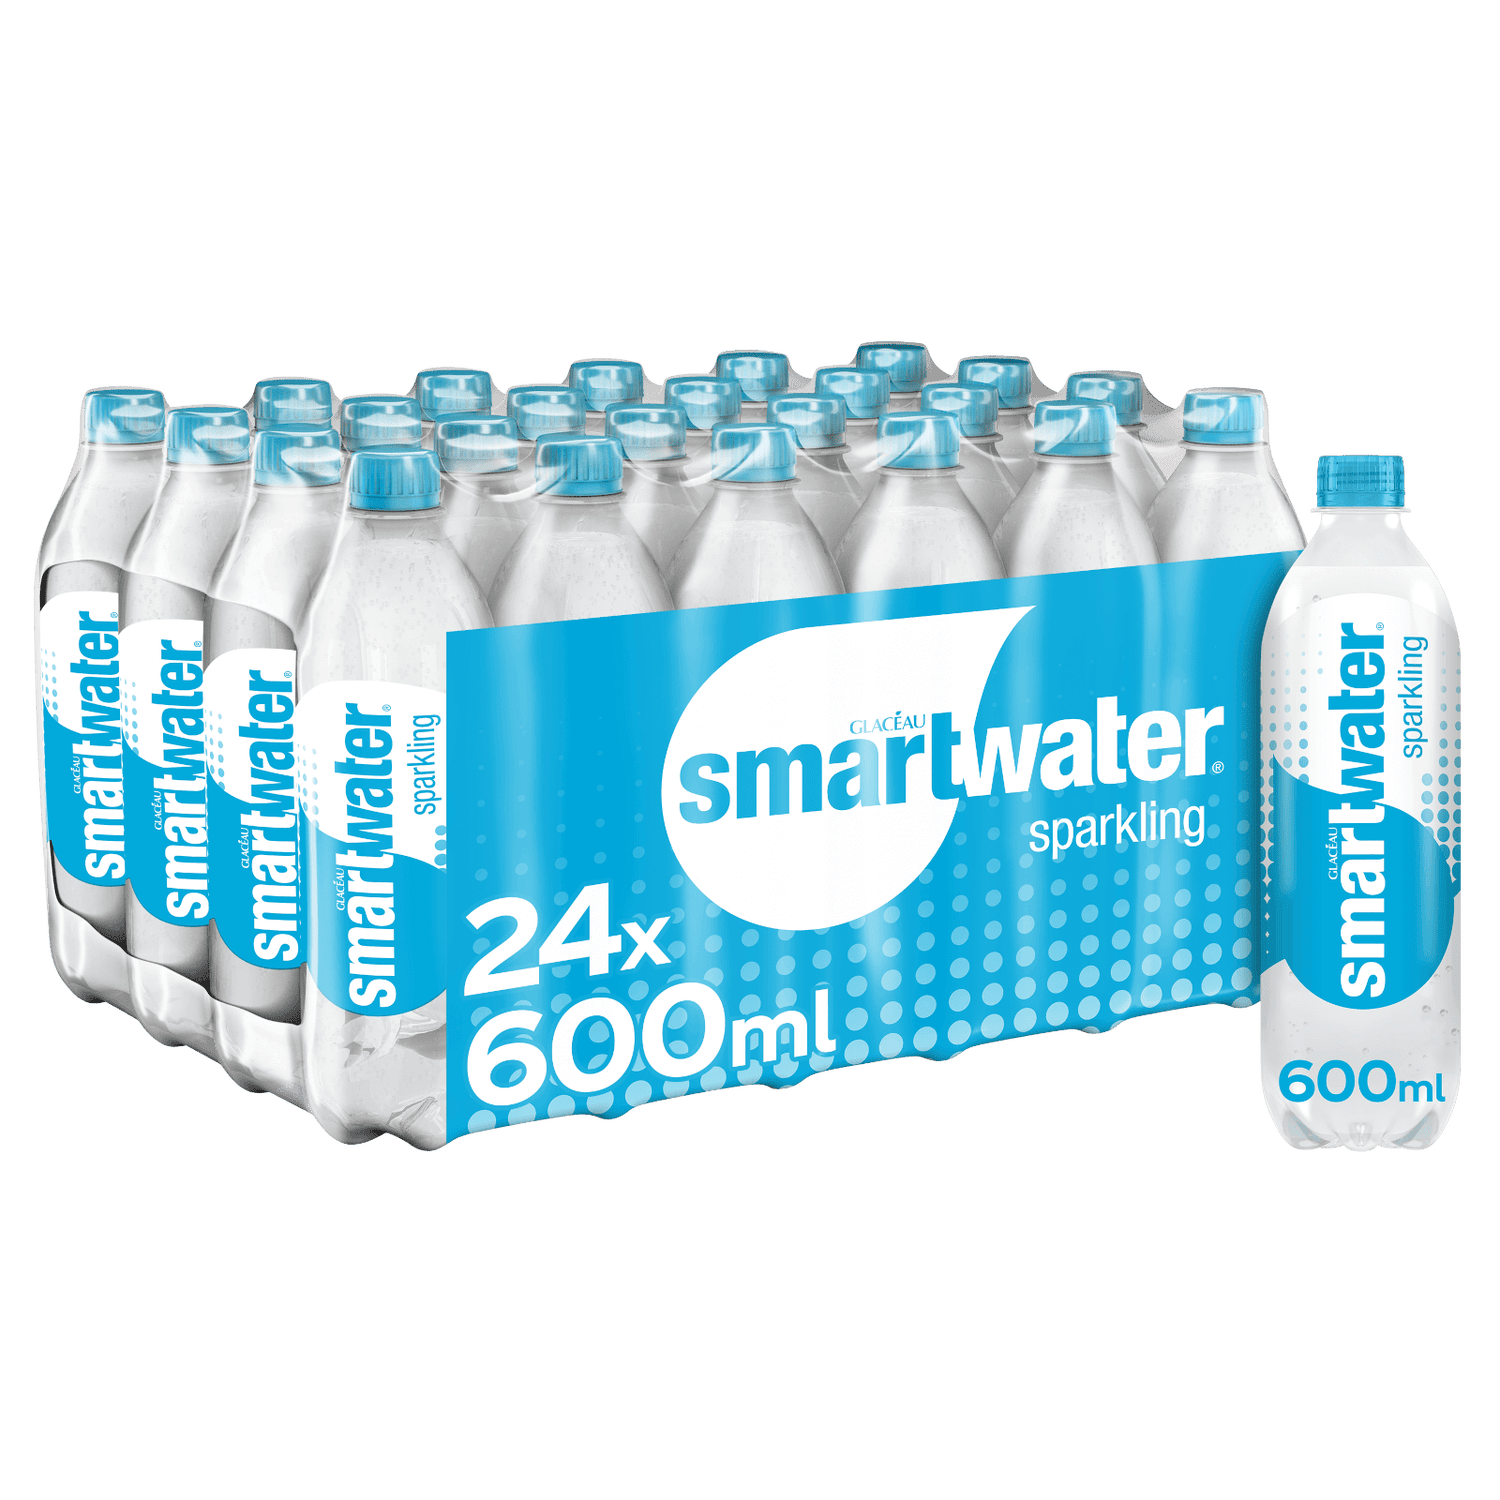 Glacéau Smartwater Sparkling 24 x 600ml